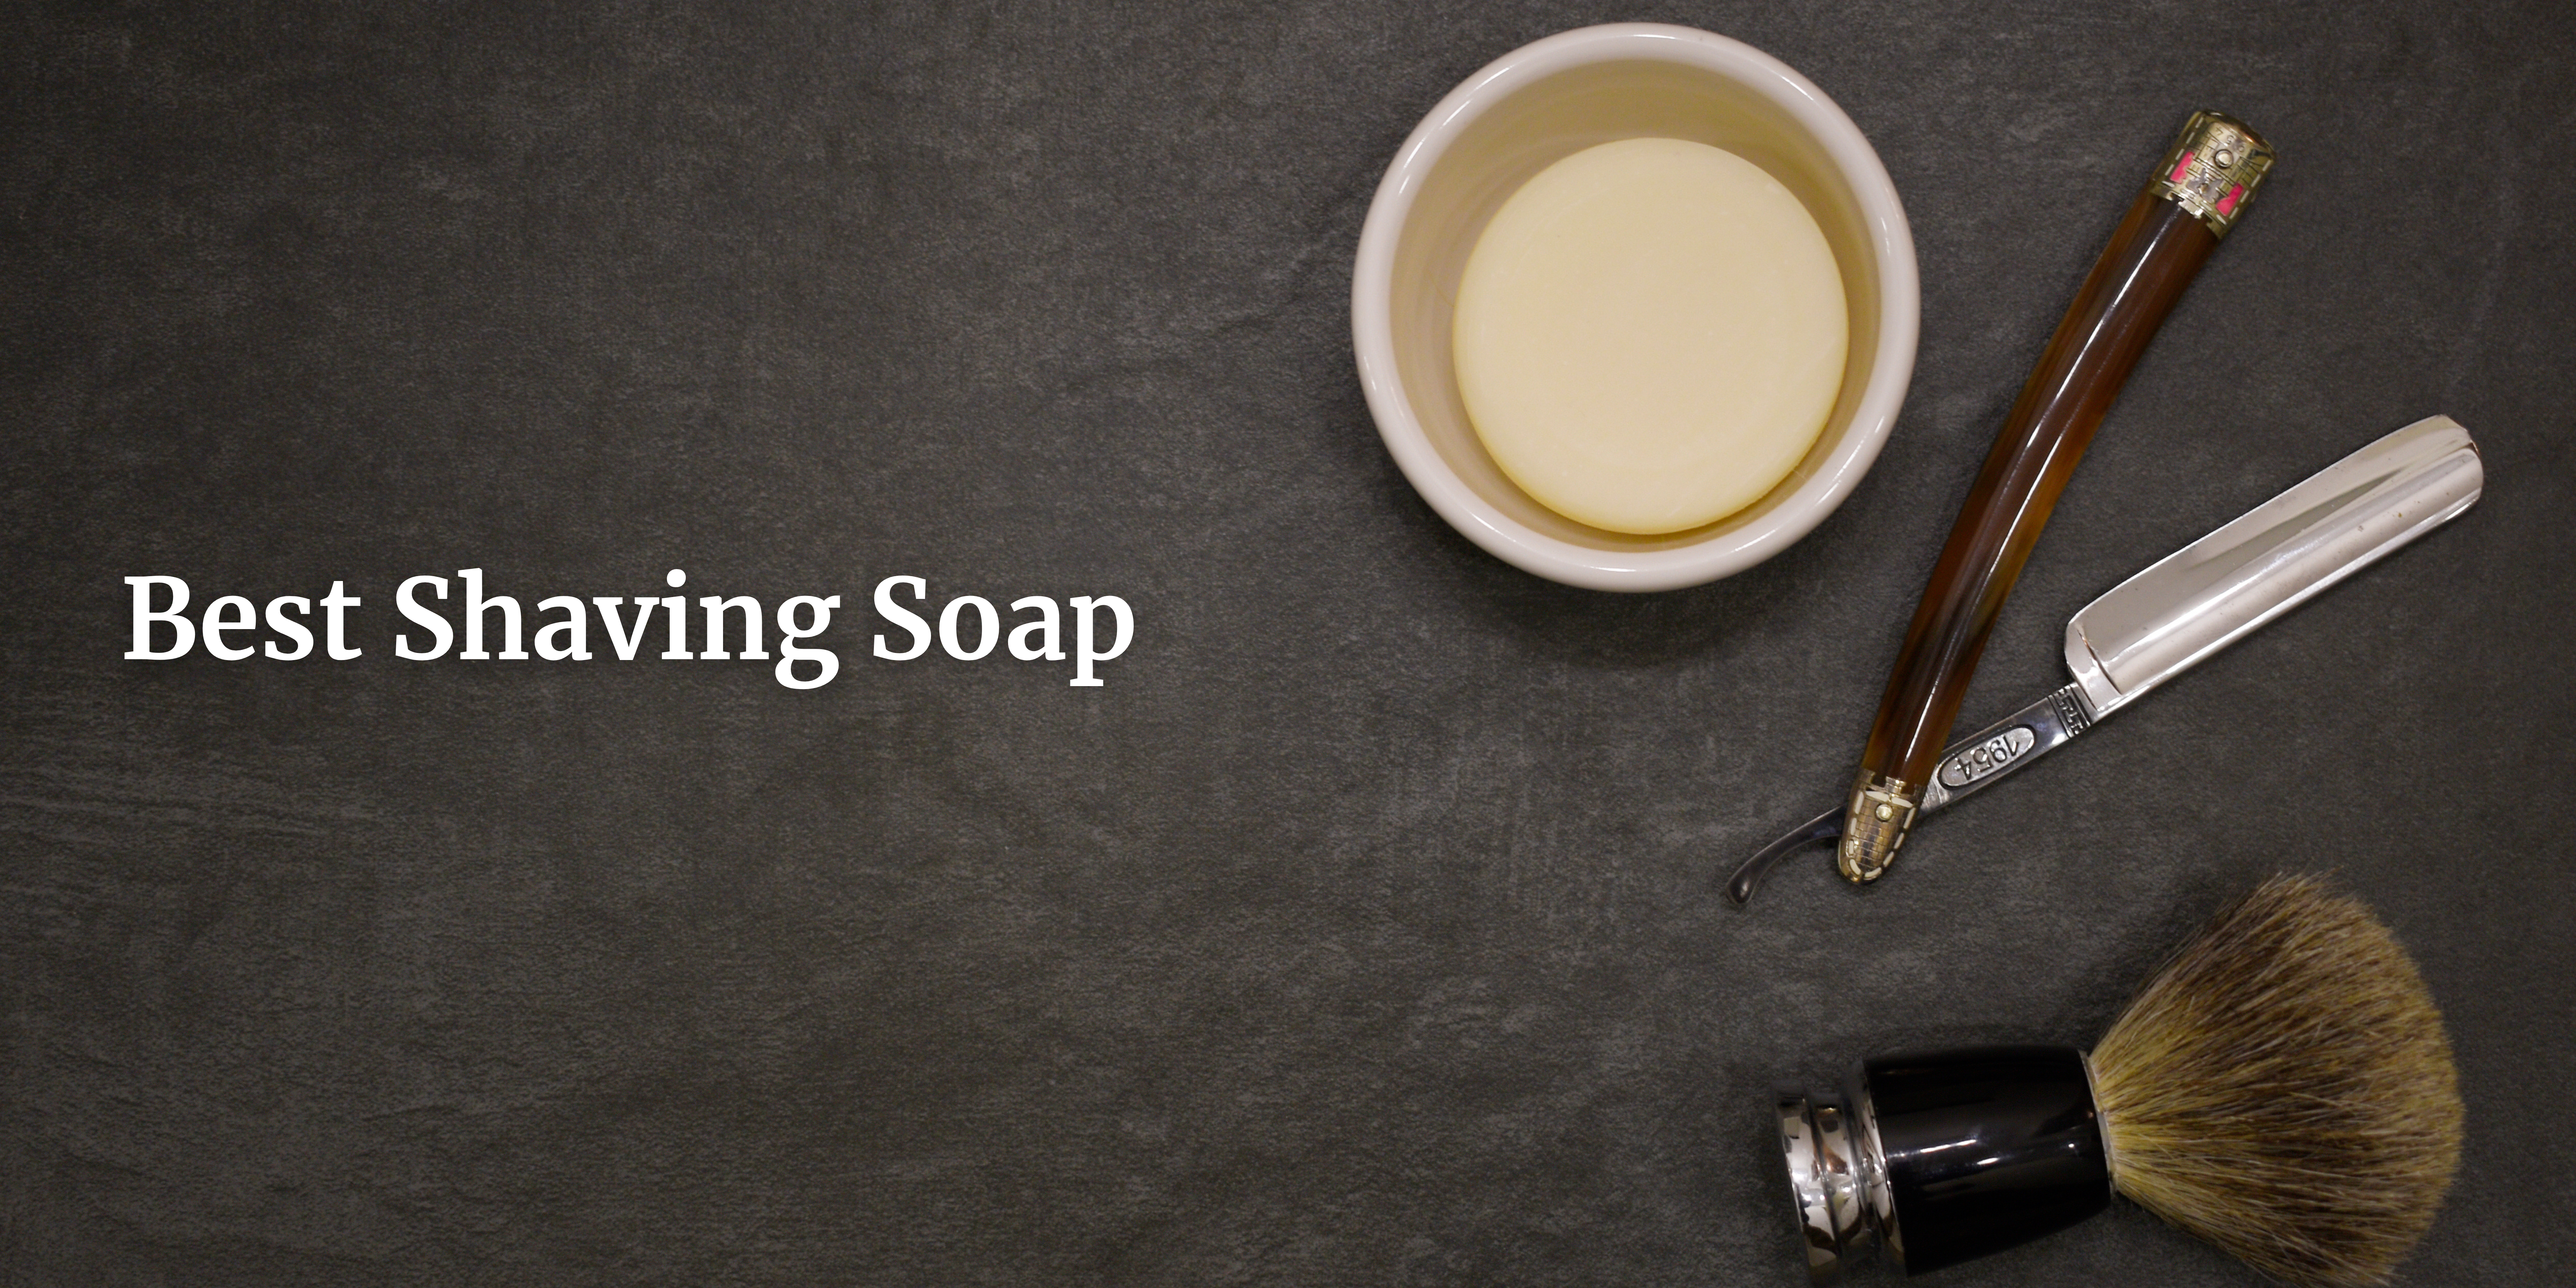 shaving soap in India